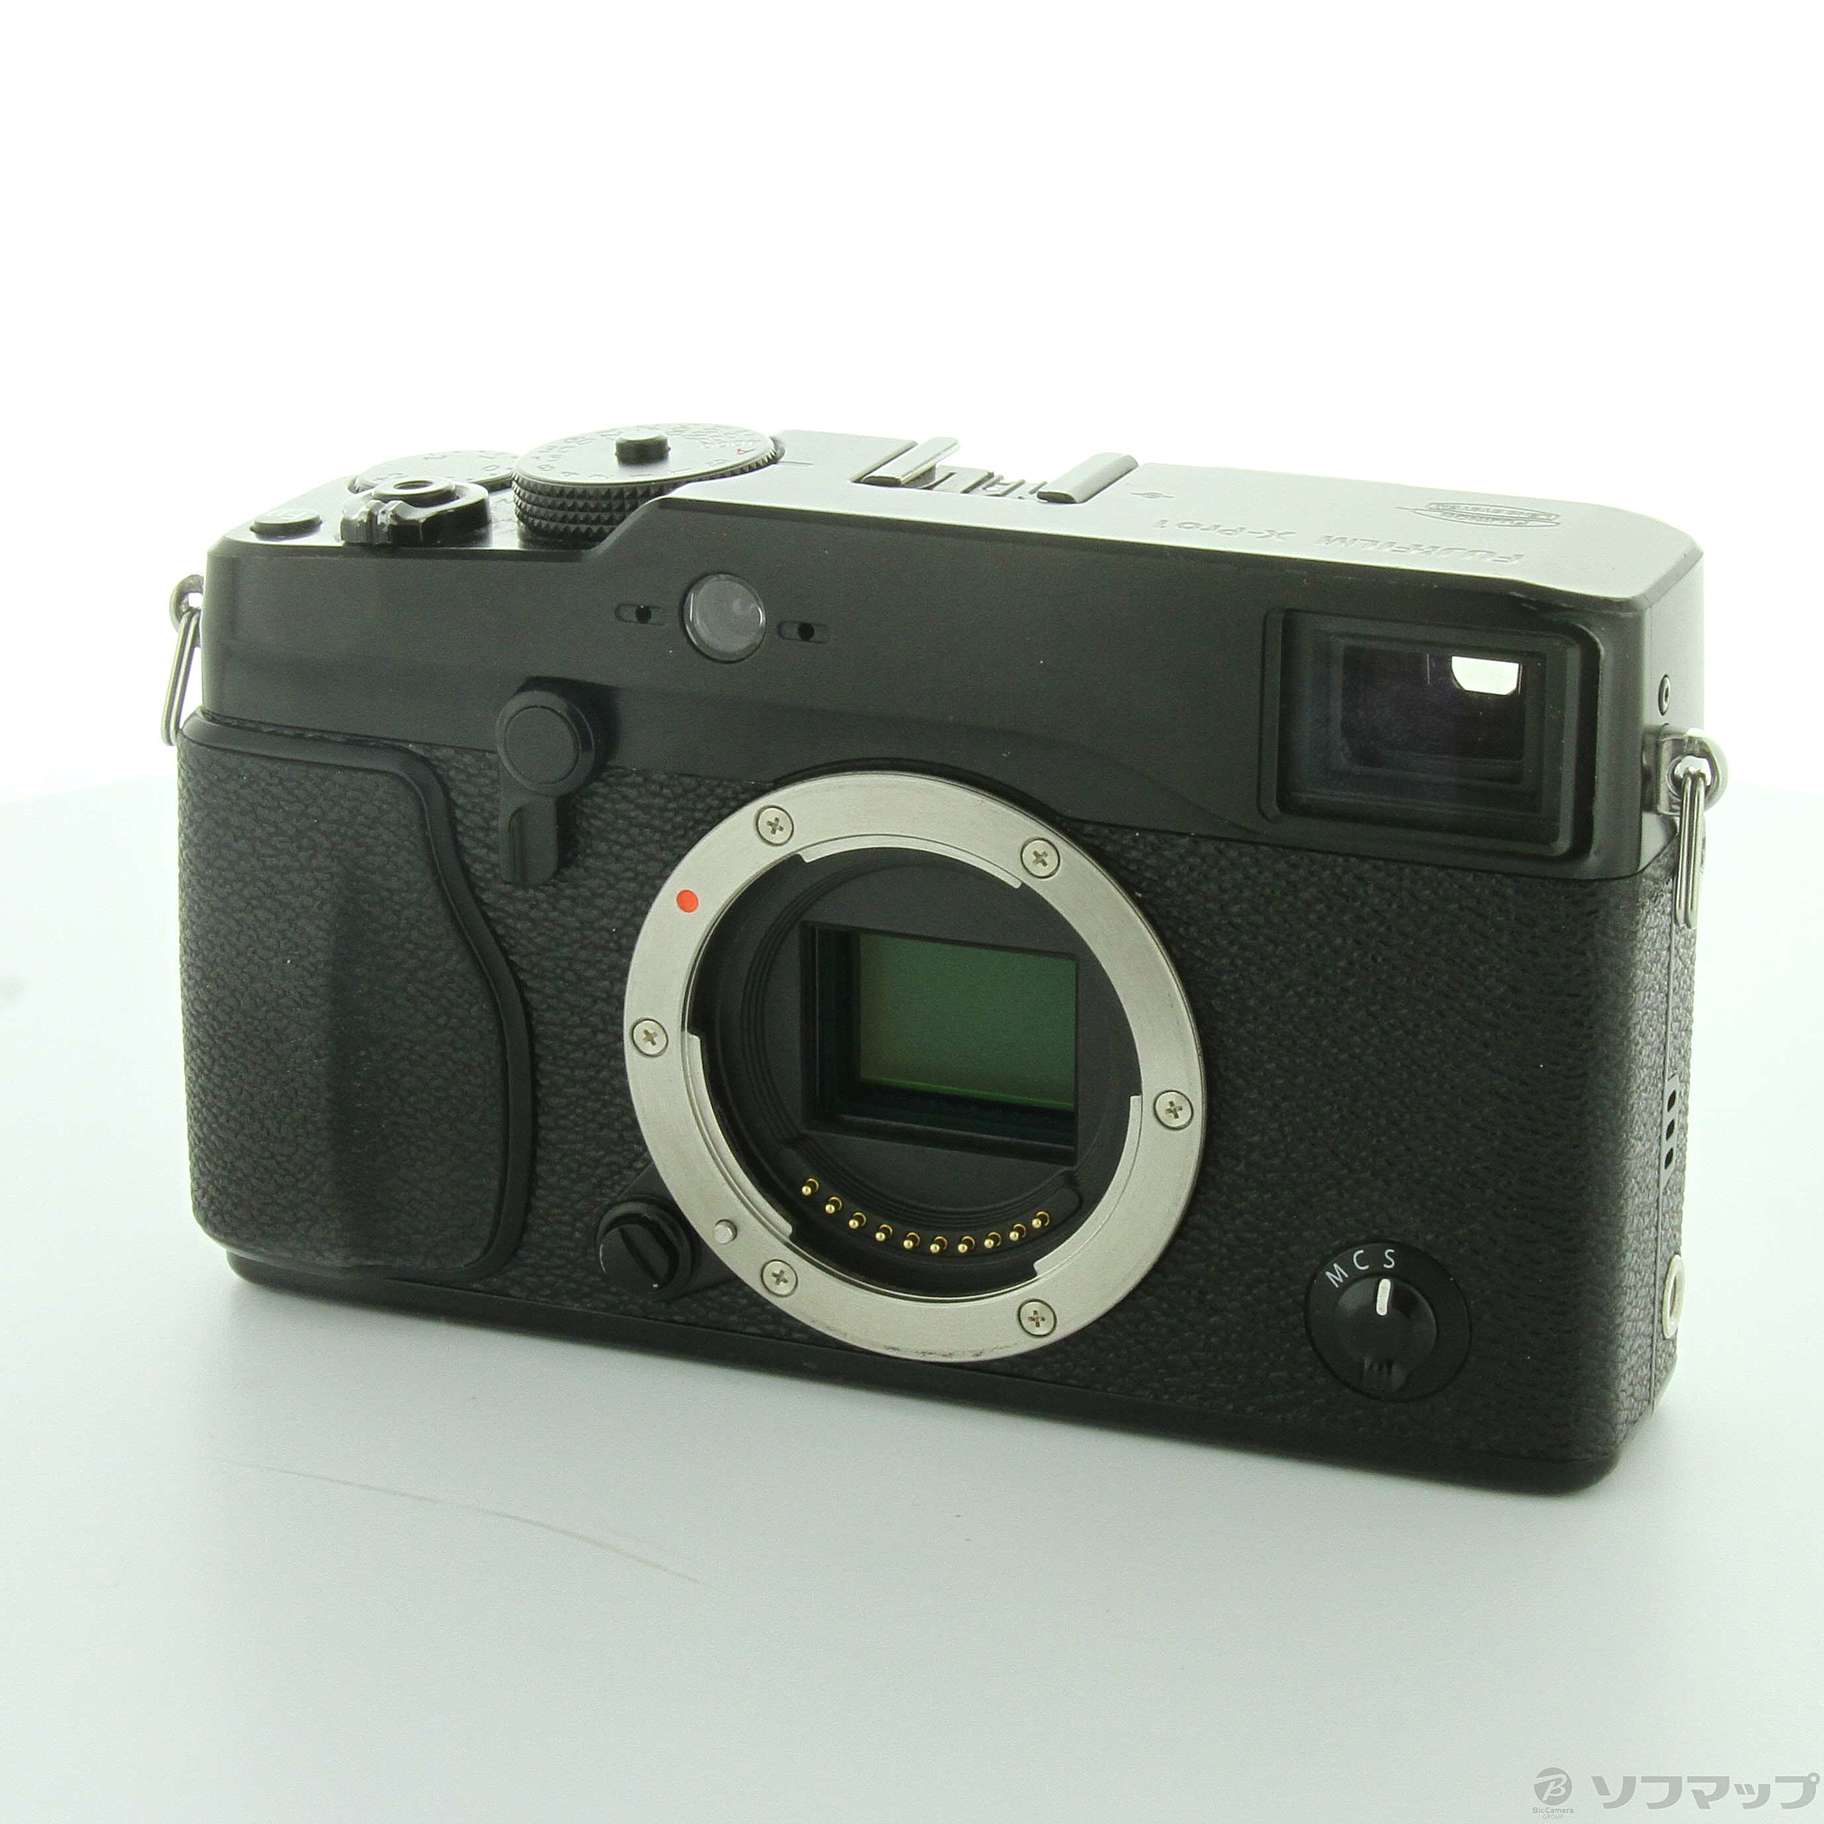 FUJIFILM ミラーレス一眼レフカメラ X-Pro1 ボディ 1630万画素 F FX-X